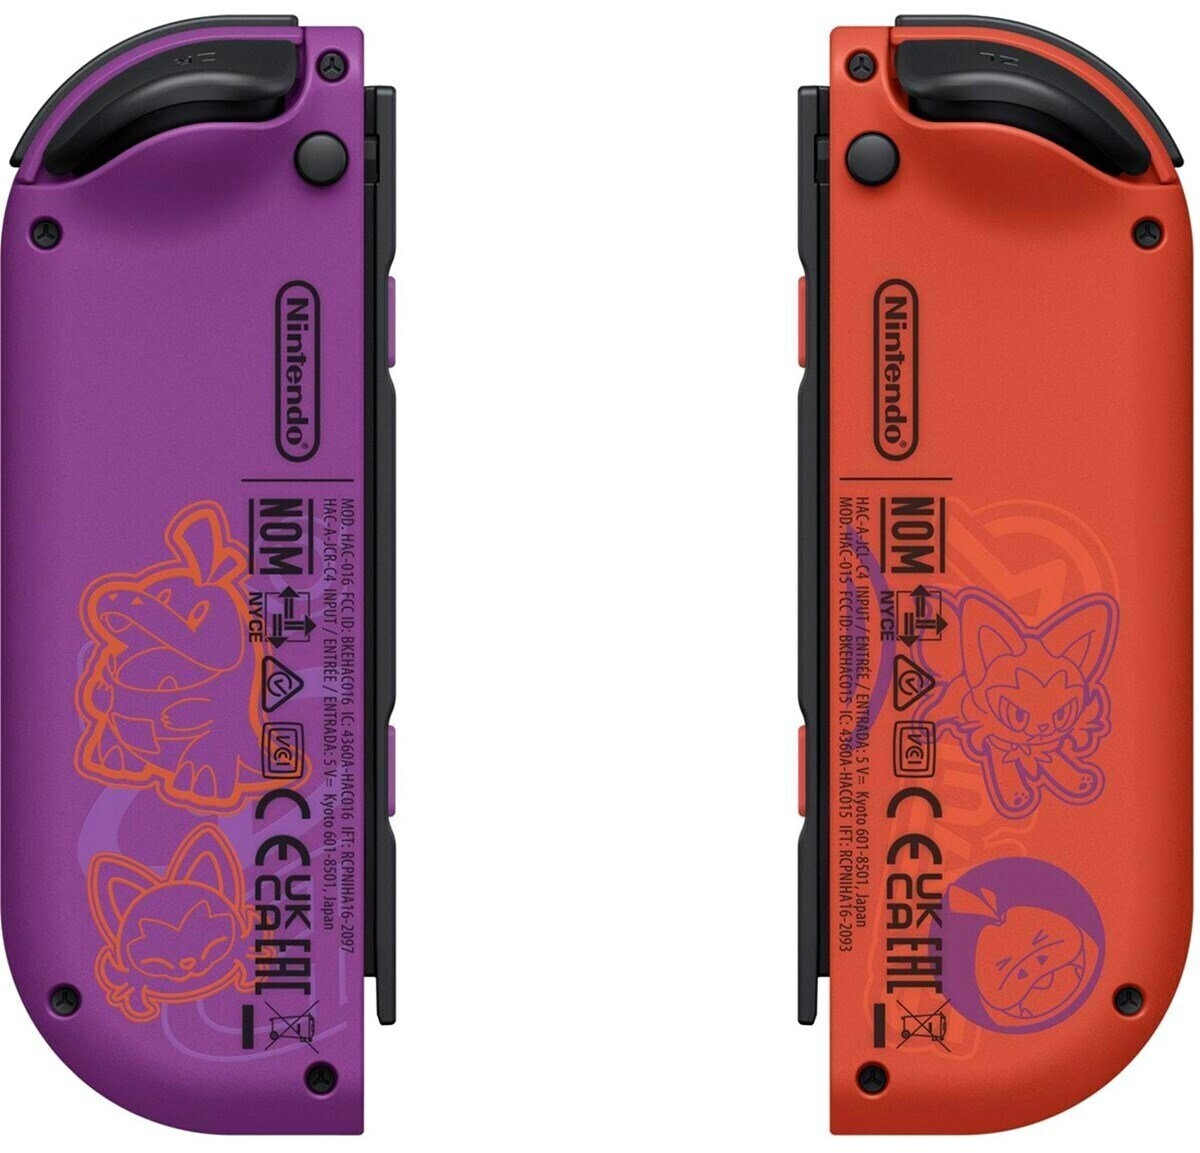 Nintendo Switch Modèle OLED Edition Pokémon Ecarlate & Pokémon Violet